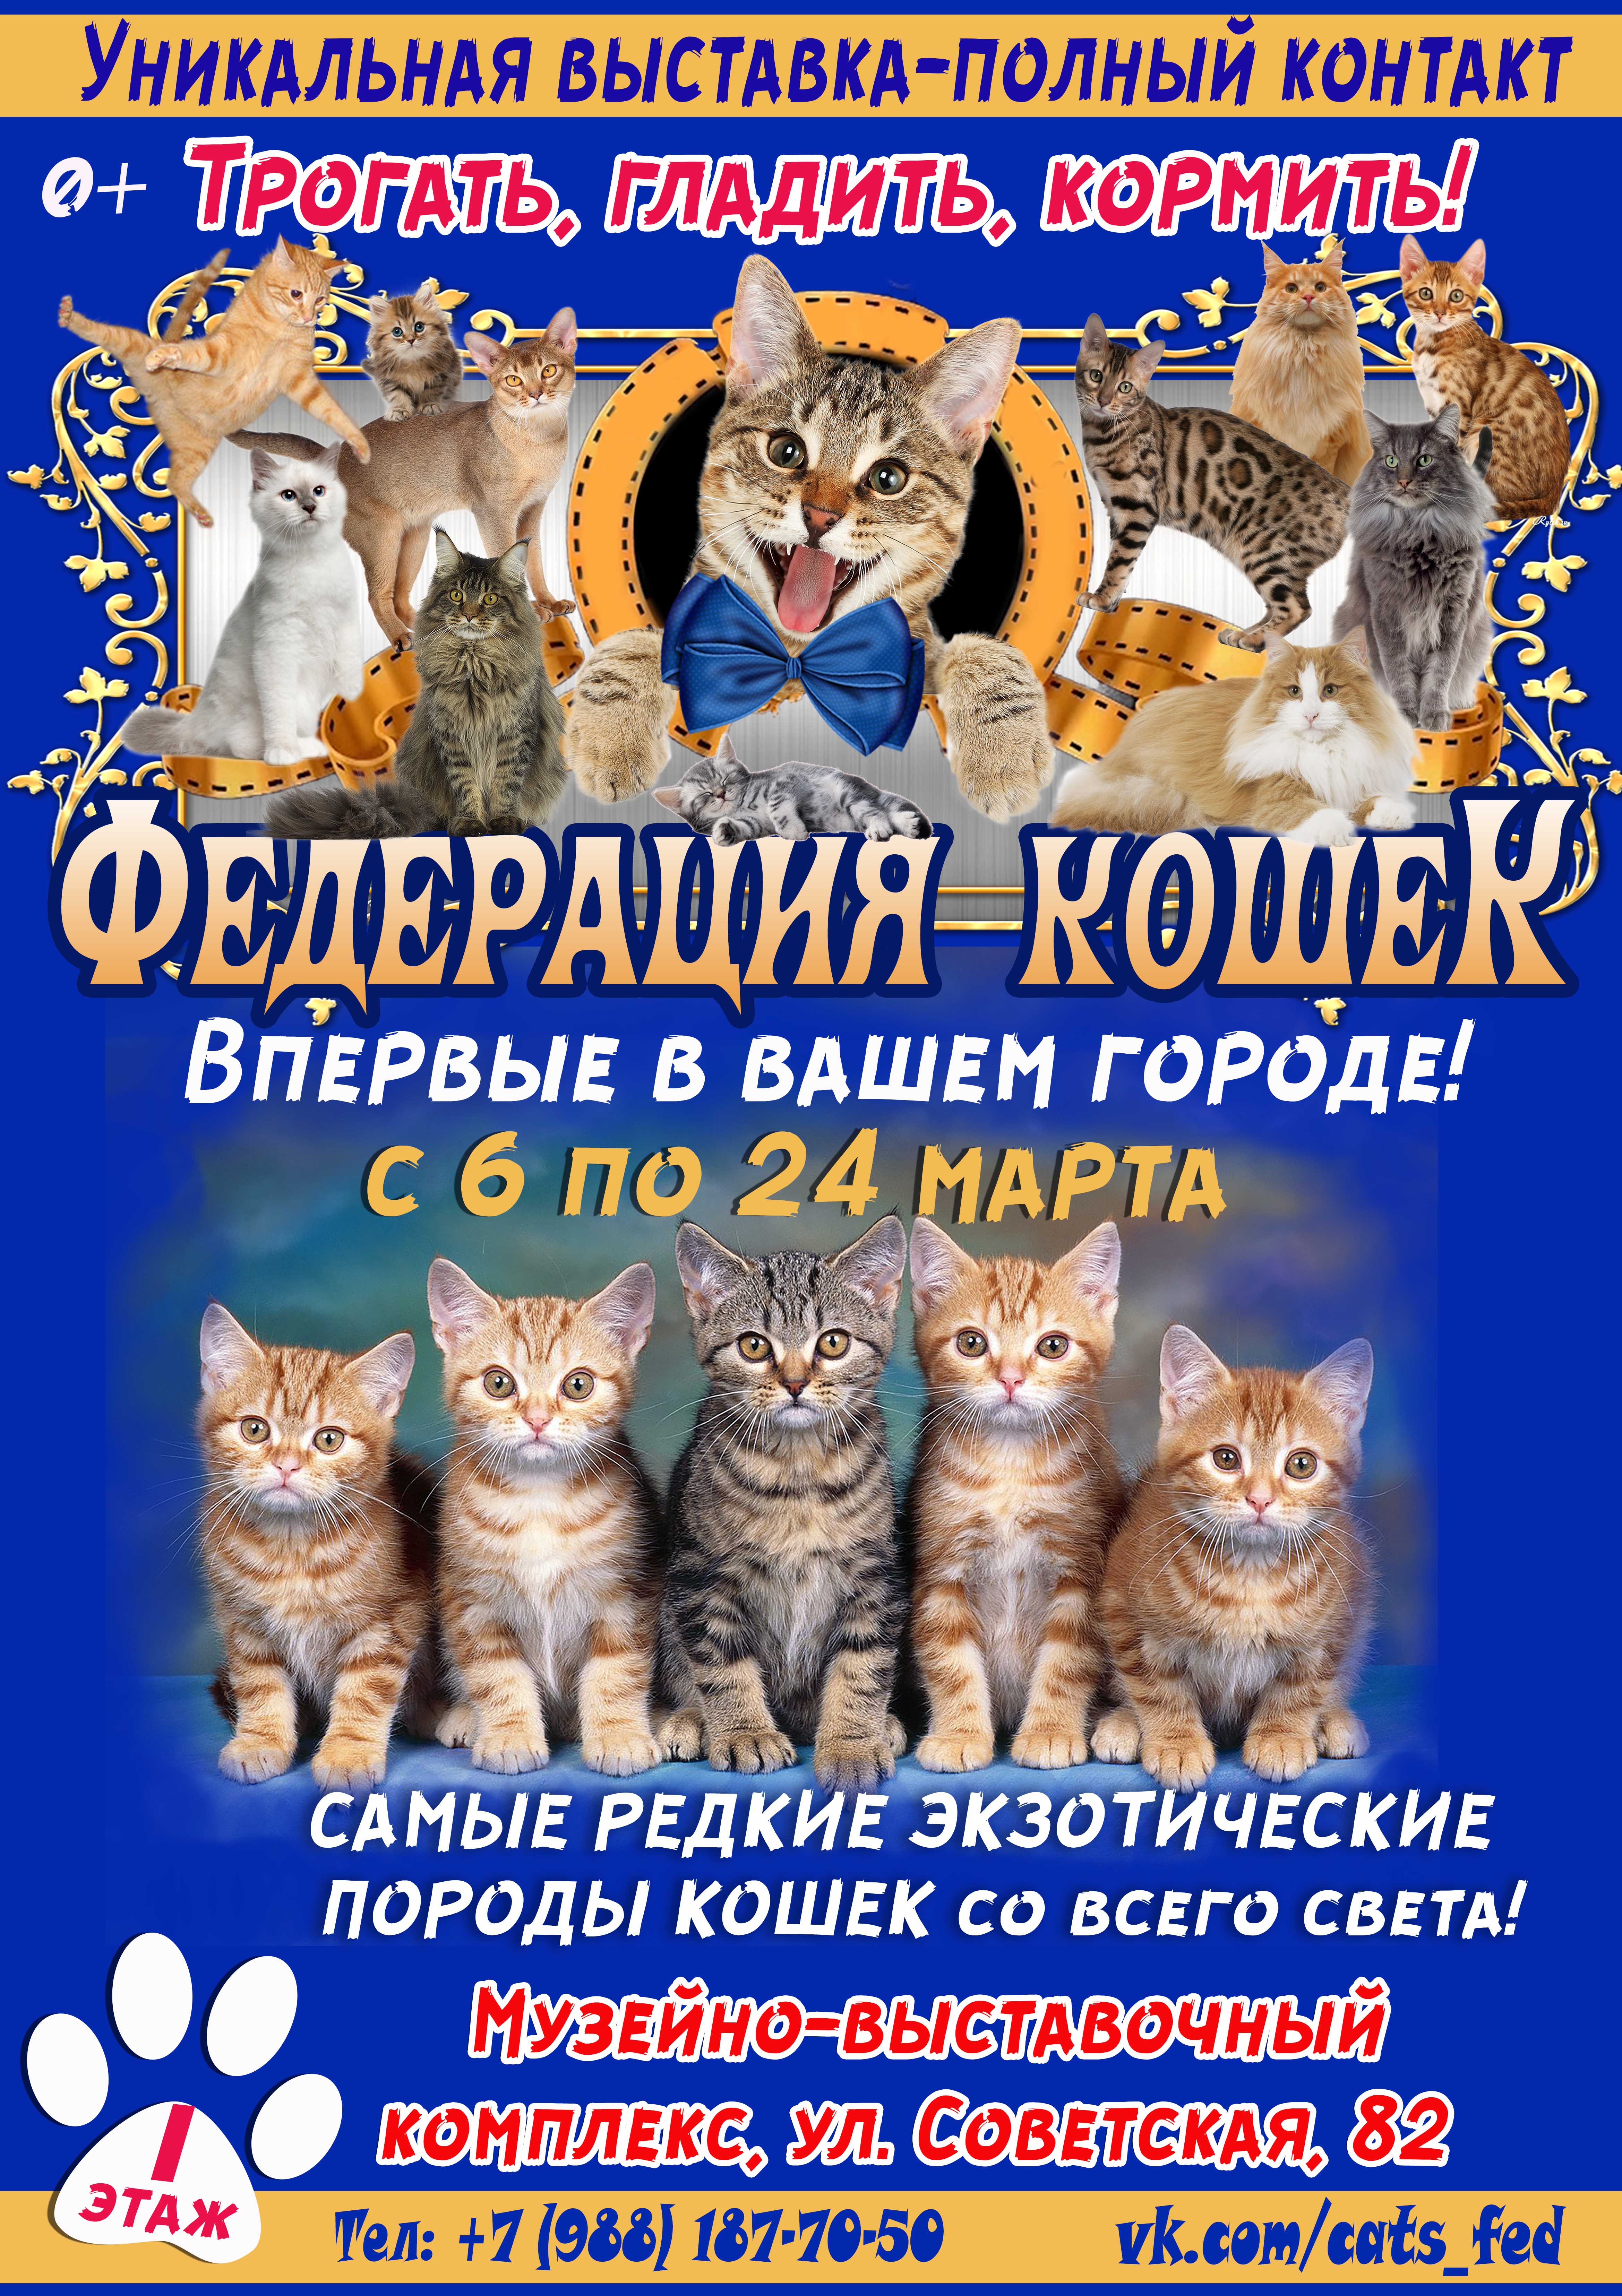 Впервые в г. Новотроицке контактная выставка "Федерация кошек" из Санкт-Петербурга!  